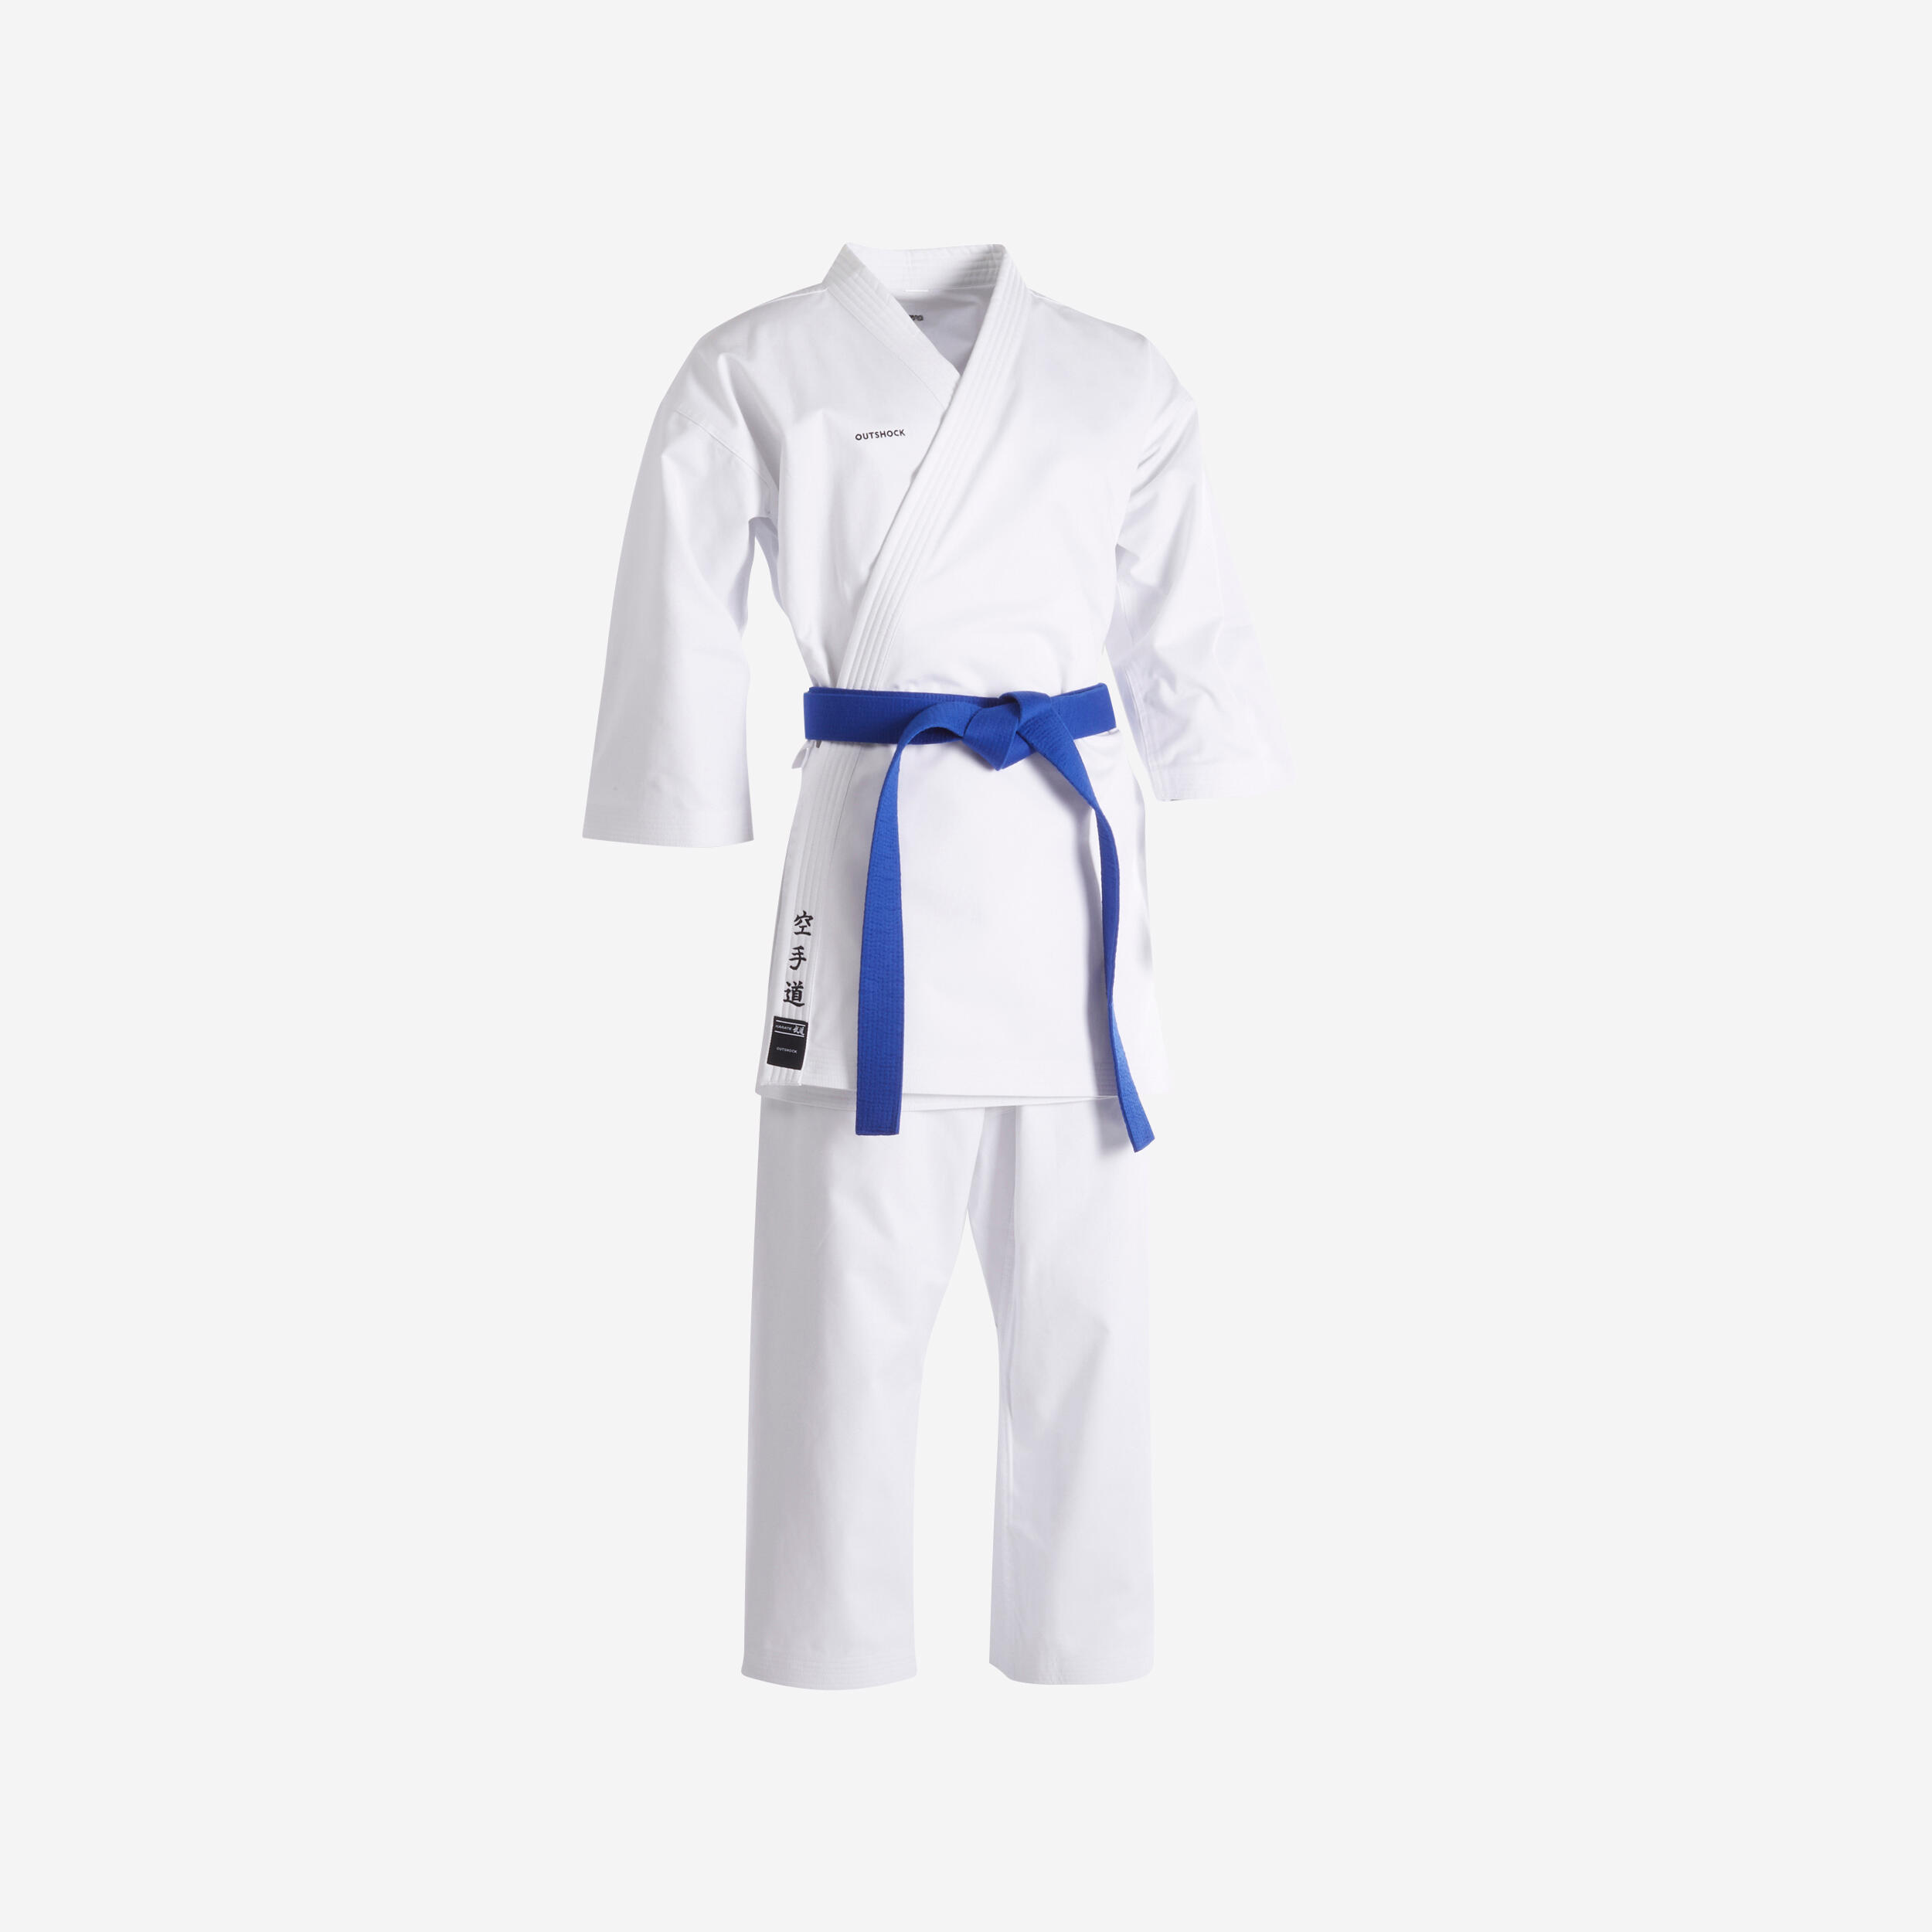 OUTSHOCK Adult Karate Uniform 500